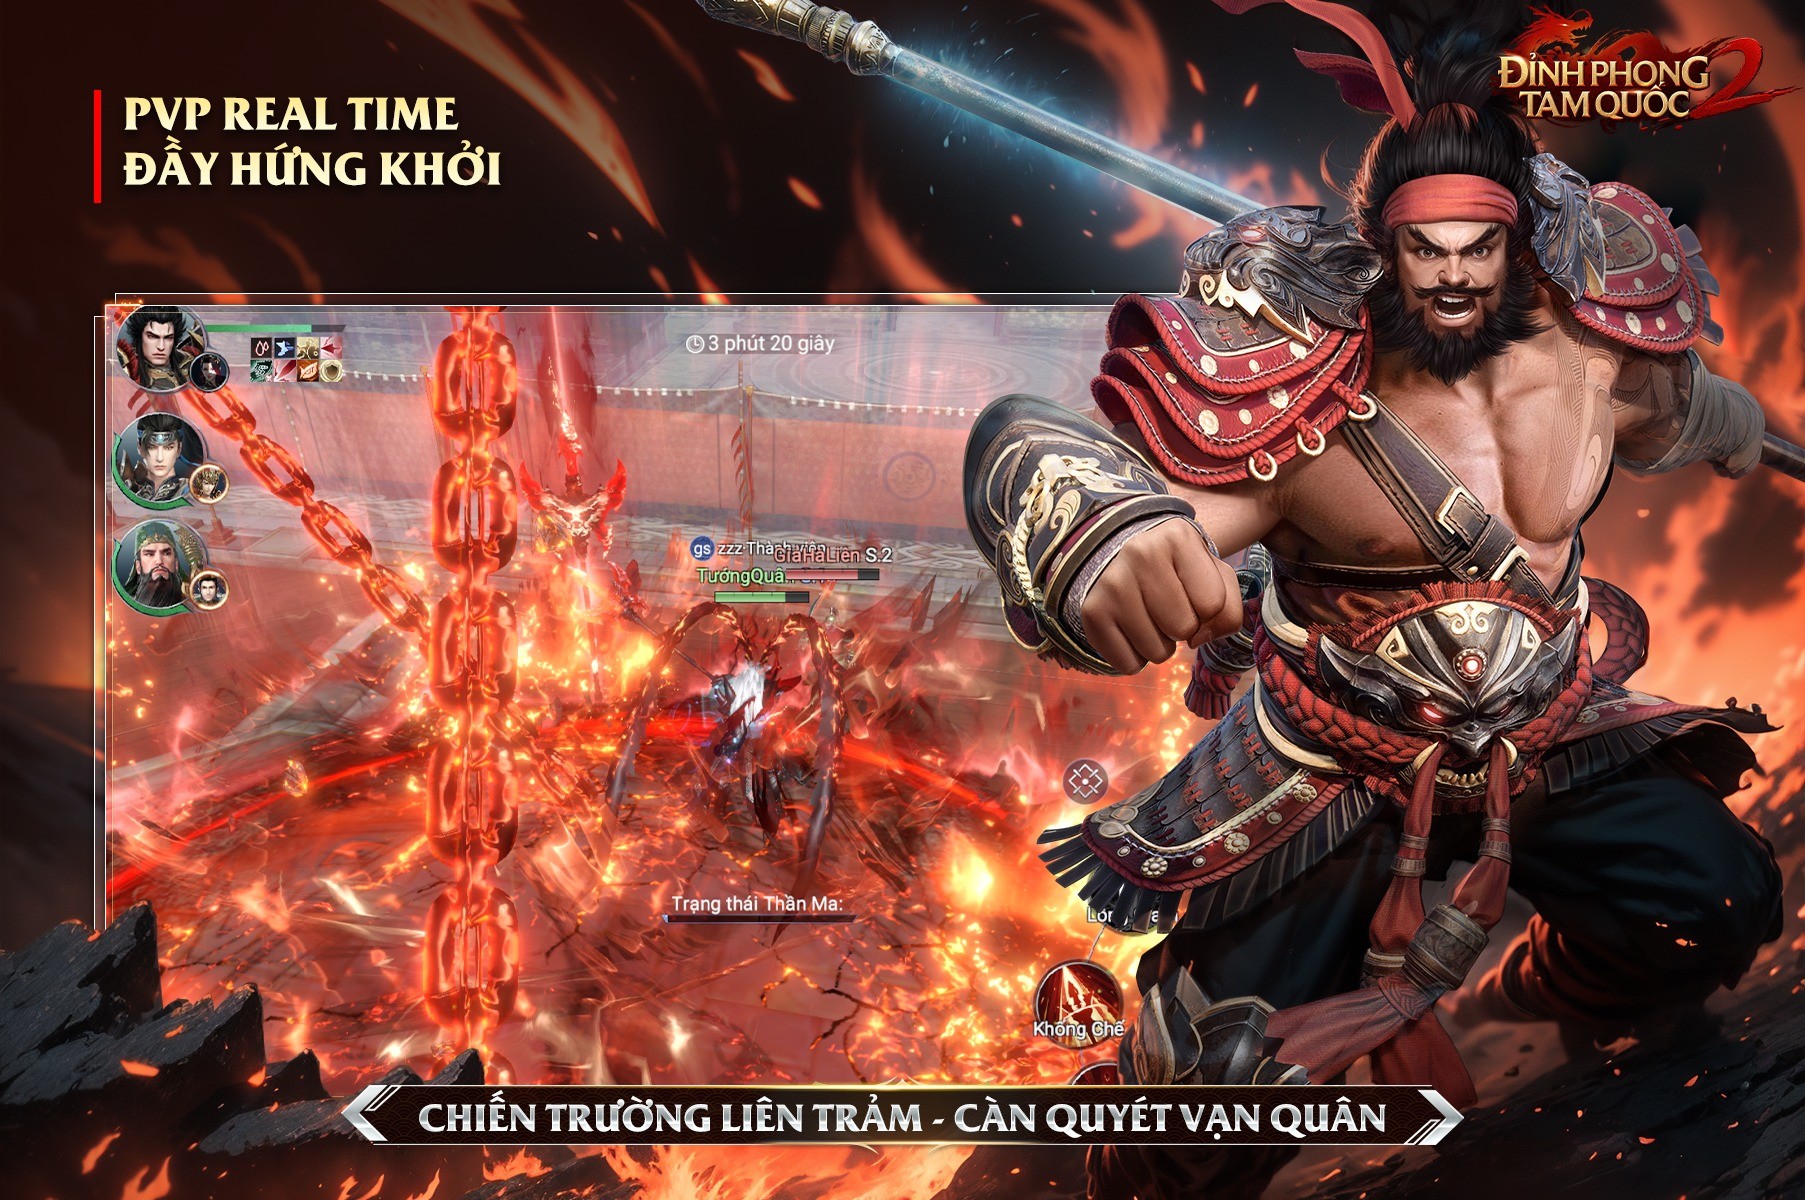 Dynasty Legends 2 sẽ phát hành tại Việt Nam với tên Đỉnh Phong 2 - Tân Tam Quốc